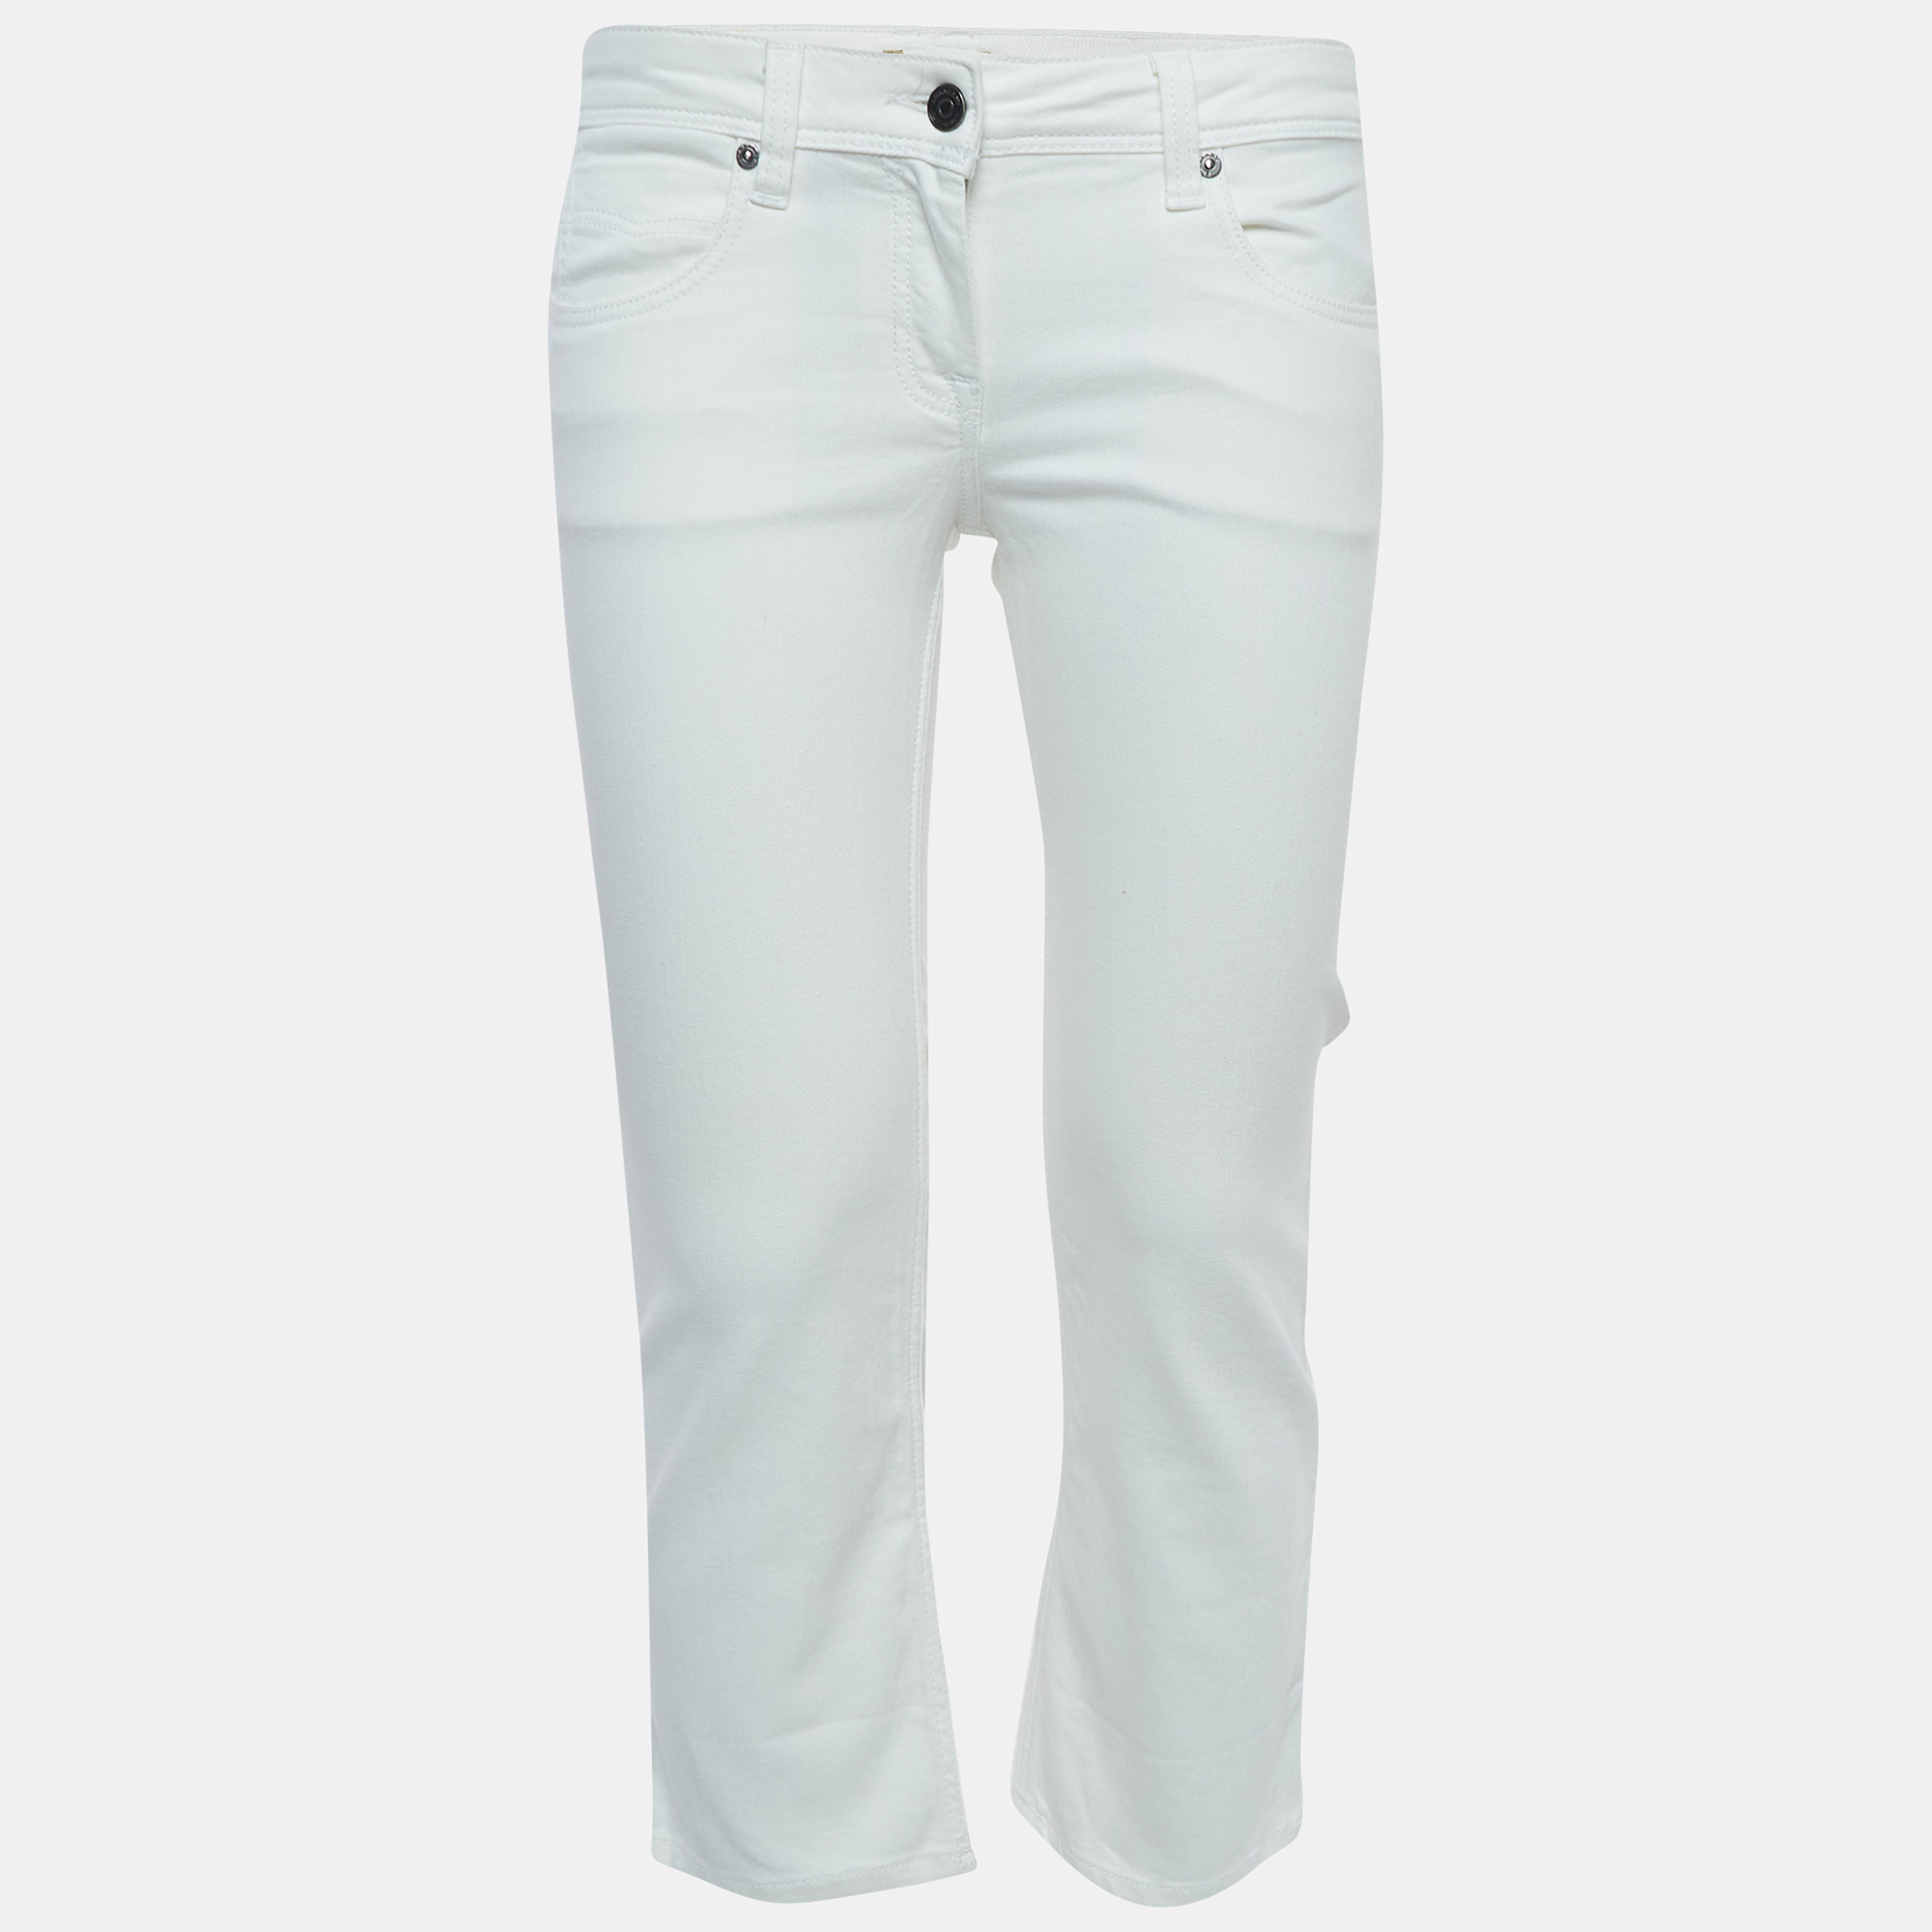 Pre-owned Burberry White Denim Skinny Leg Jeans S Waist 27"